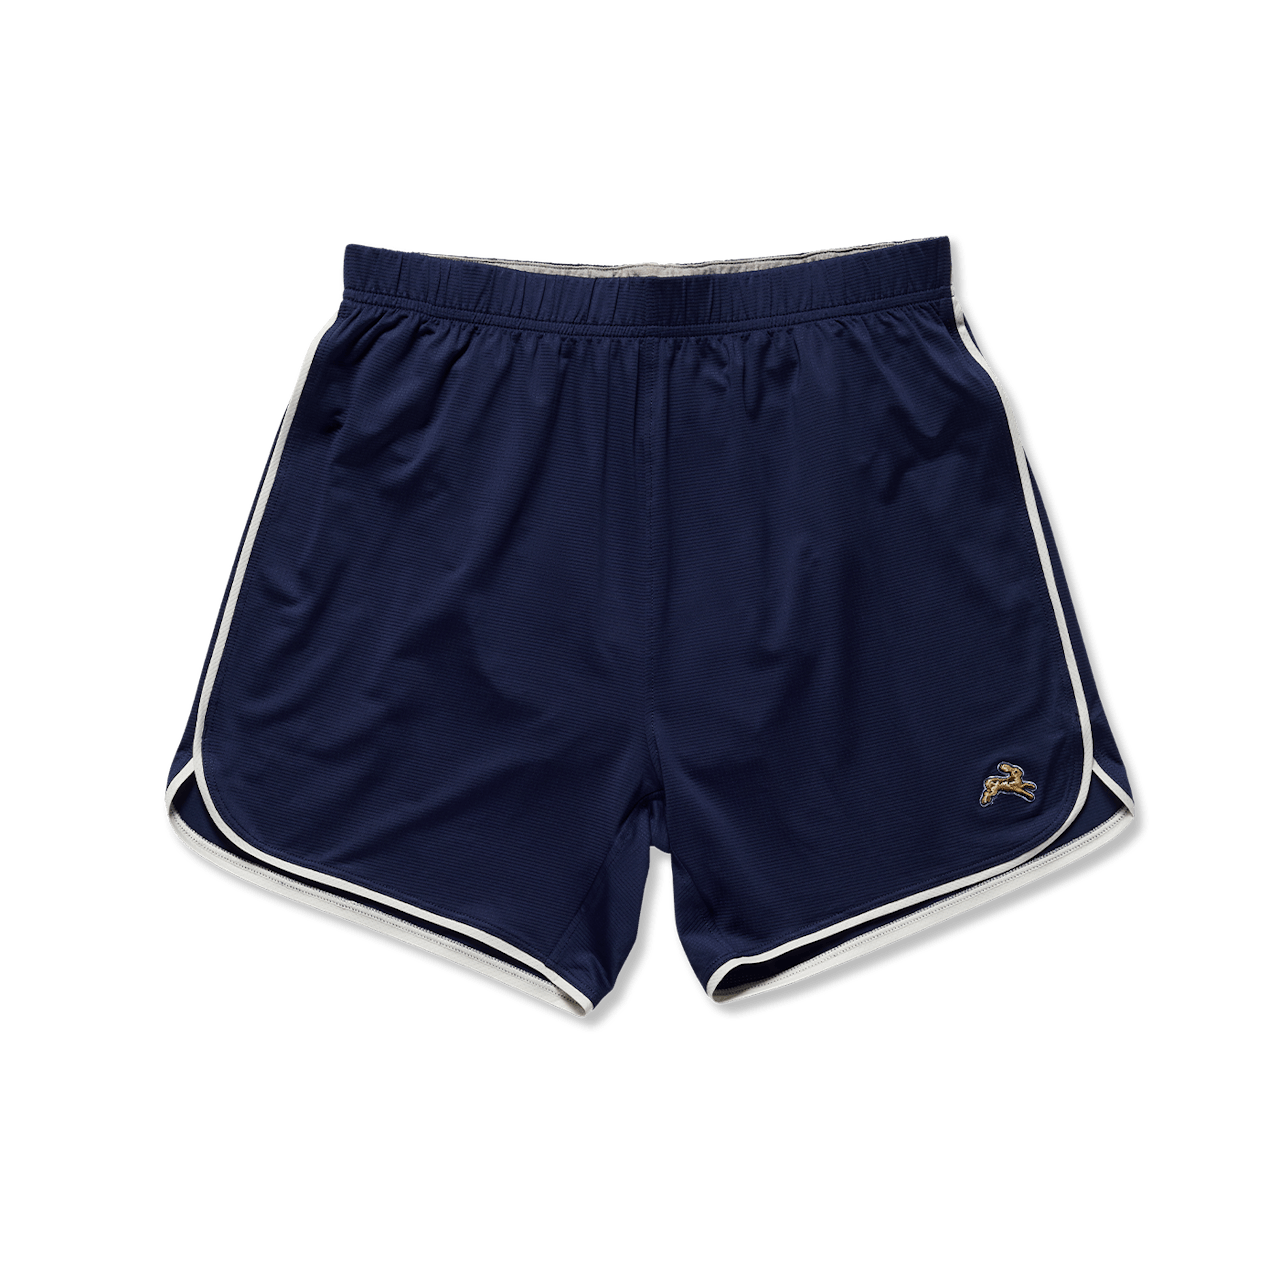 Men's Minimal Liner Shorts